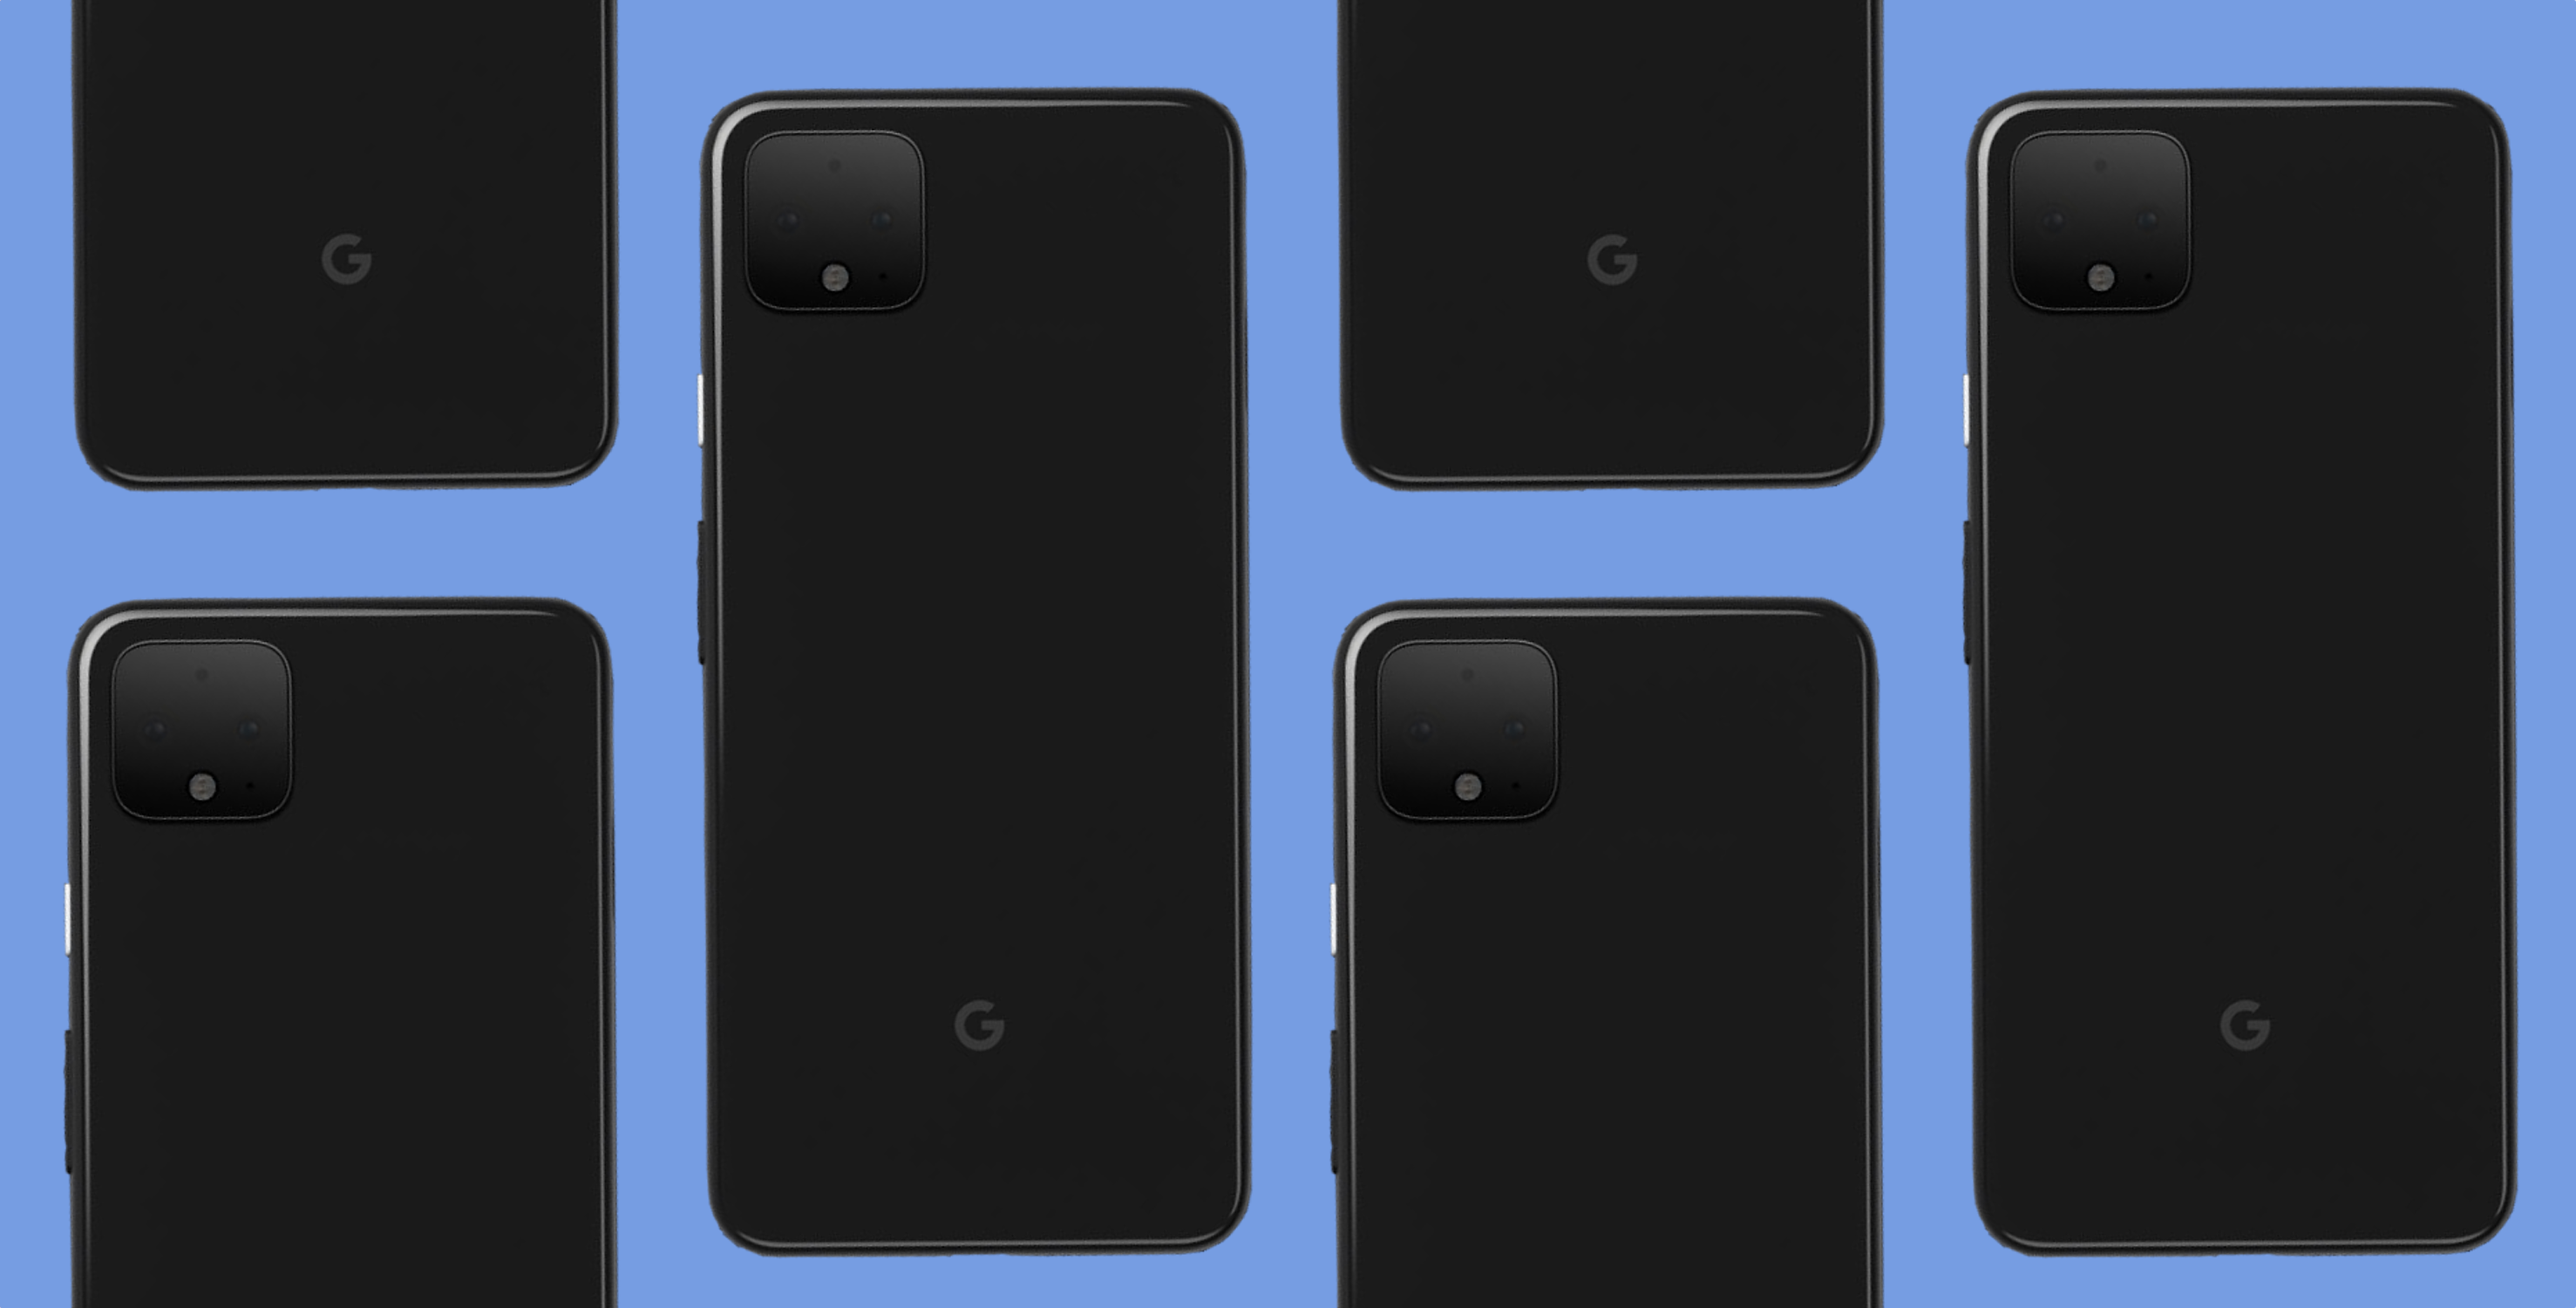 Aqui está tudo o que sabemos sobre o Motion Sense no Google Pixel 4 pode fazer no lançamento